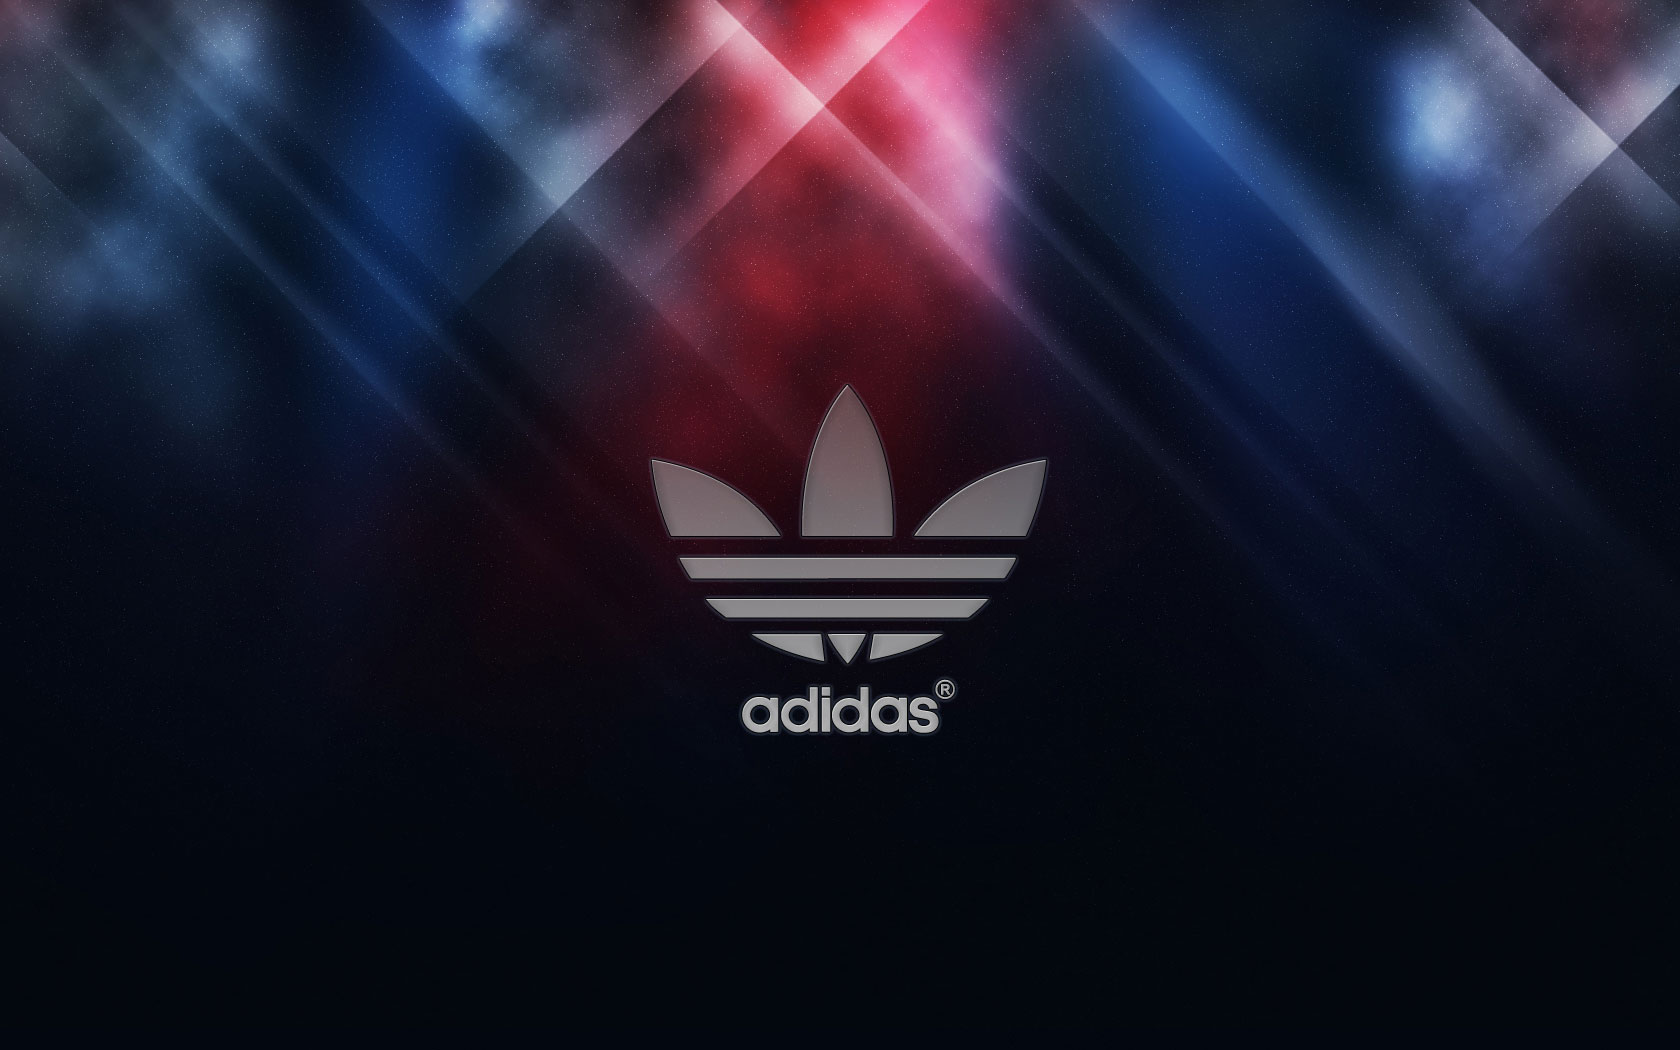 Description Adidas Logo Wallpaper 2013 is a hi res Wallpaper for pc 1680x1050